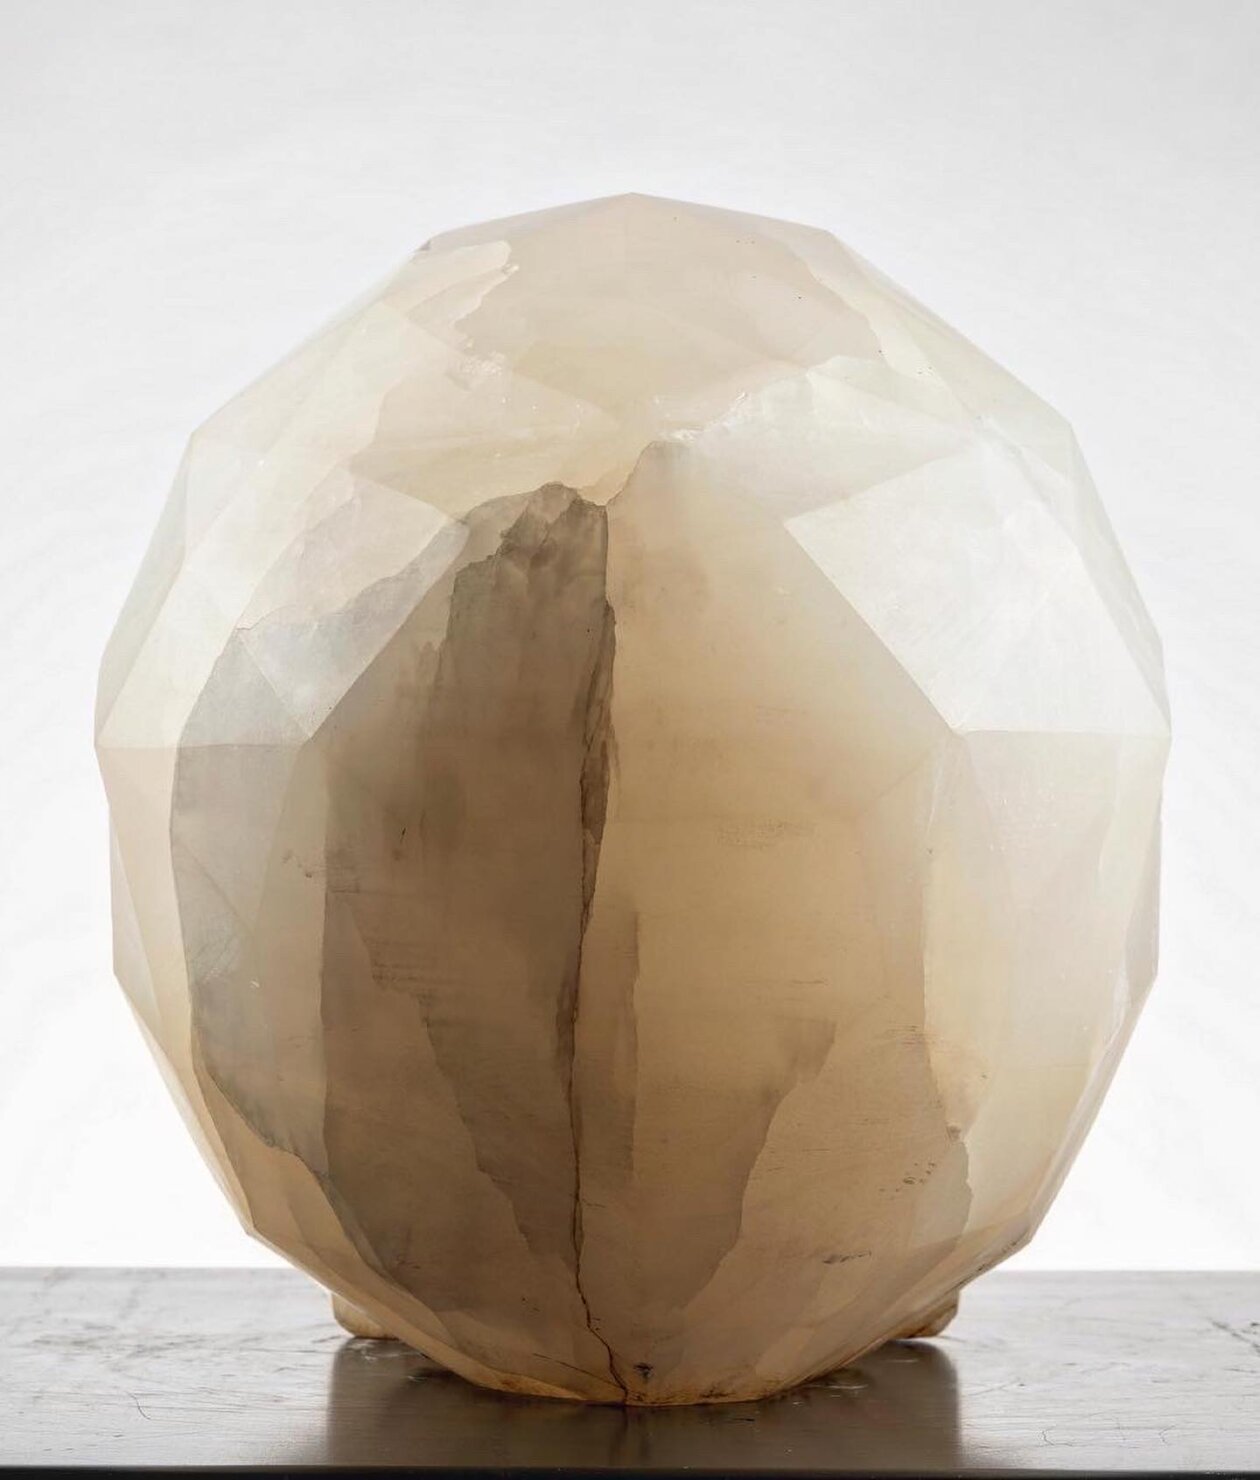 Diamond, A Skull Marble Sculpture By Massimiliano Pelletti (5)